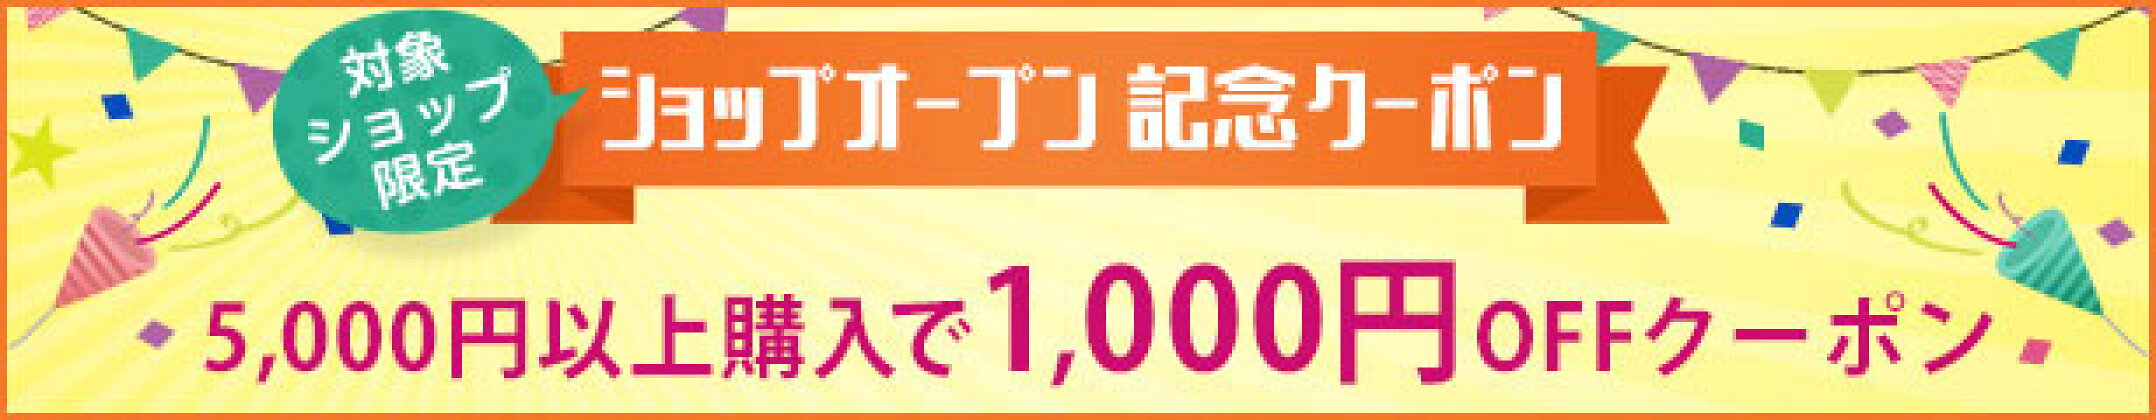 1,000円オフ